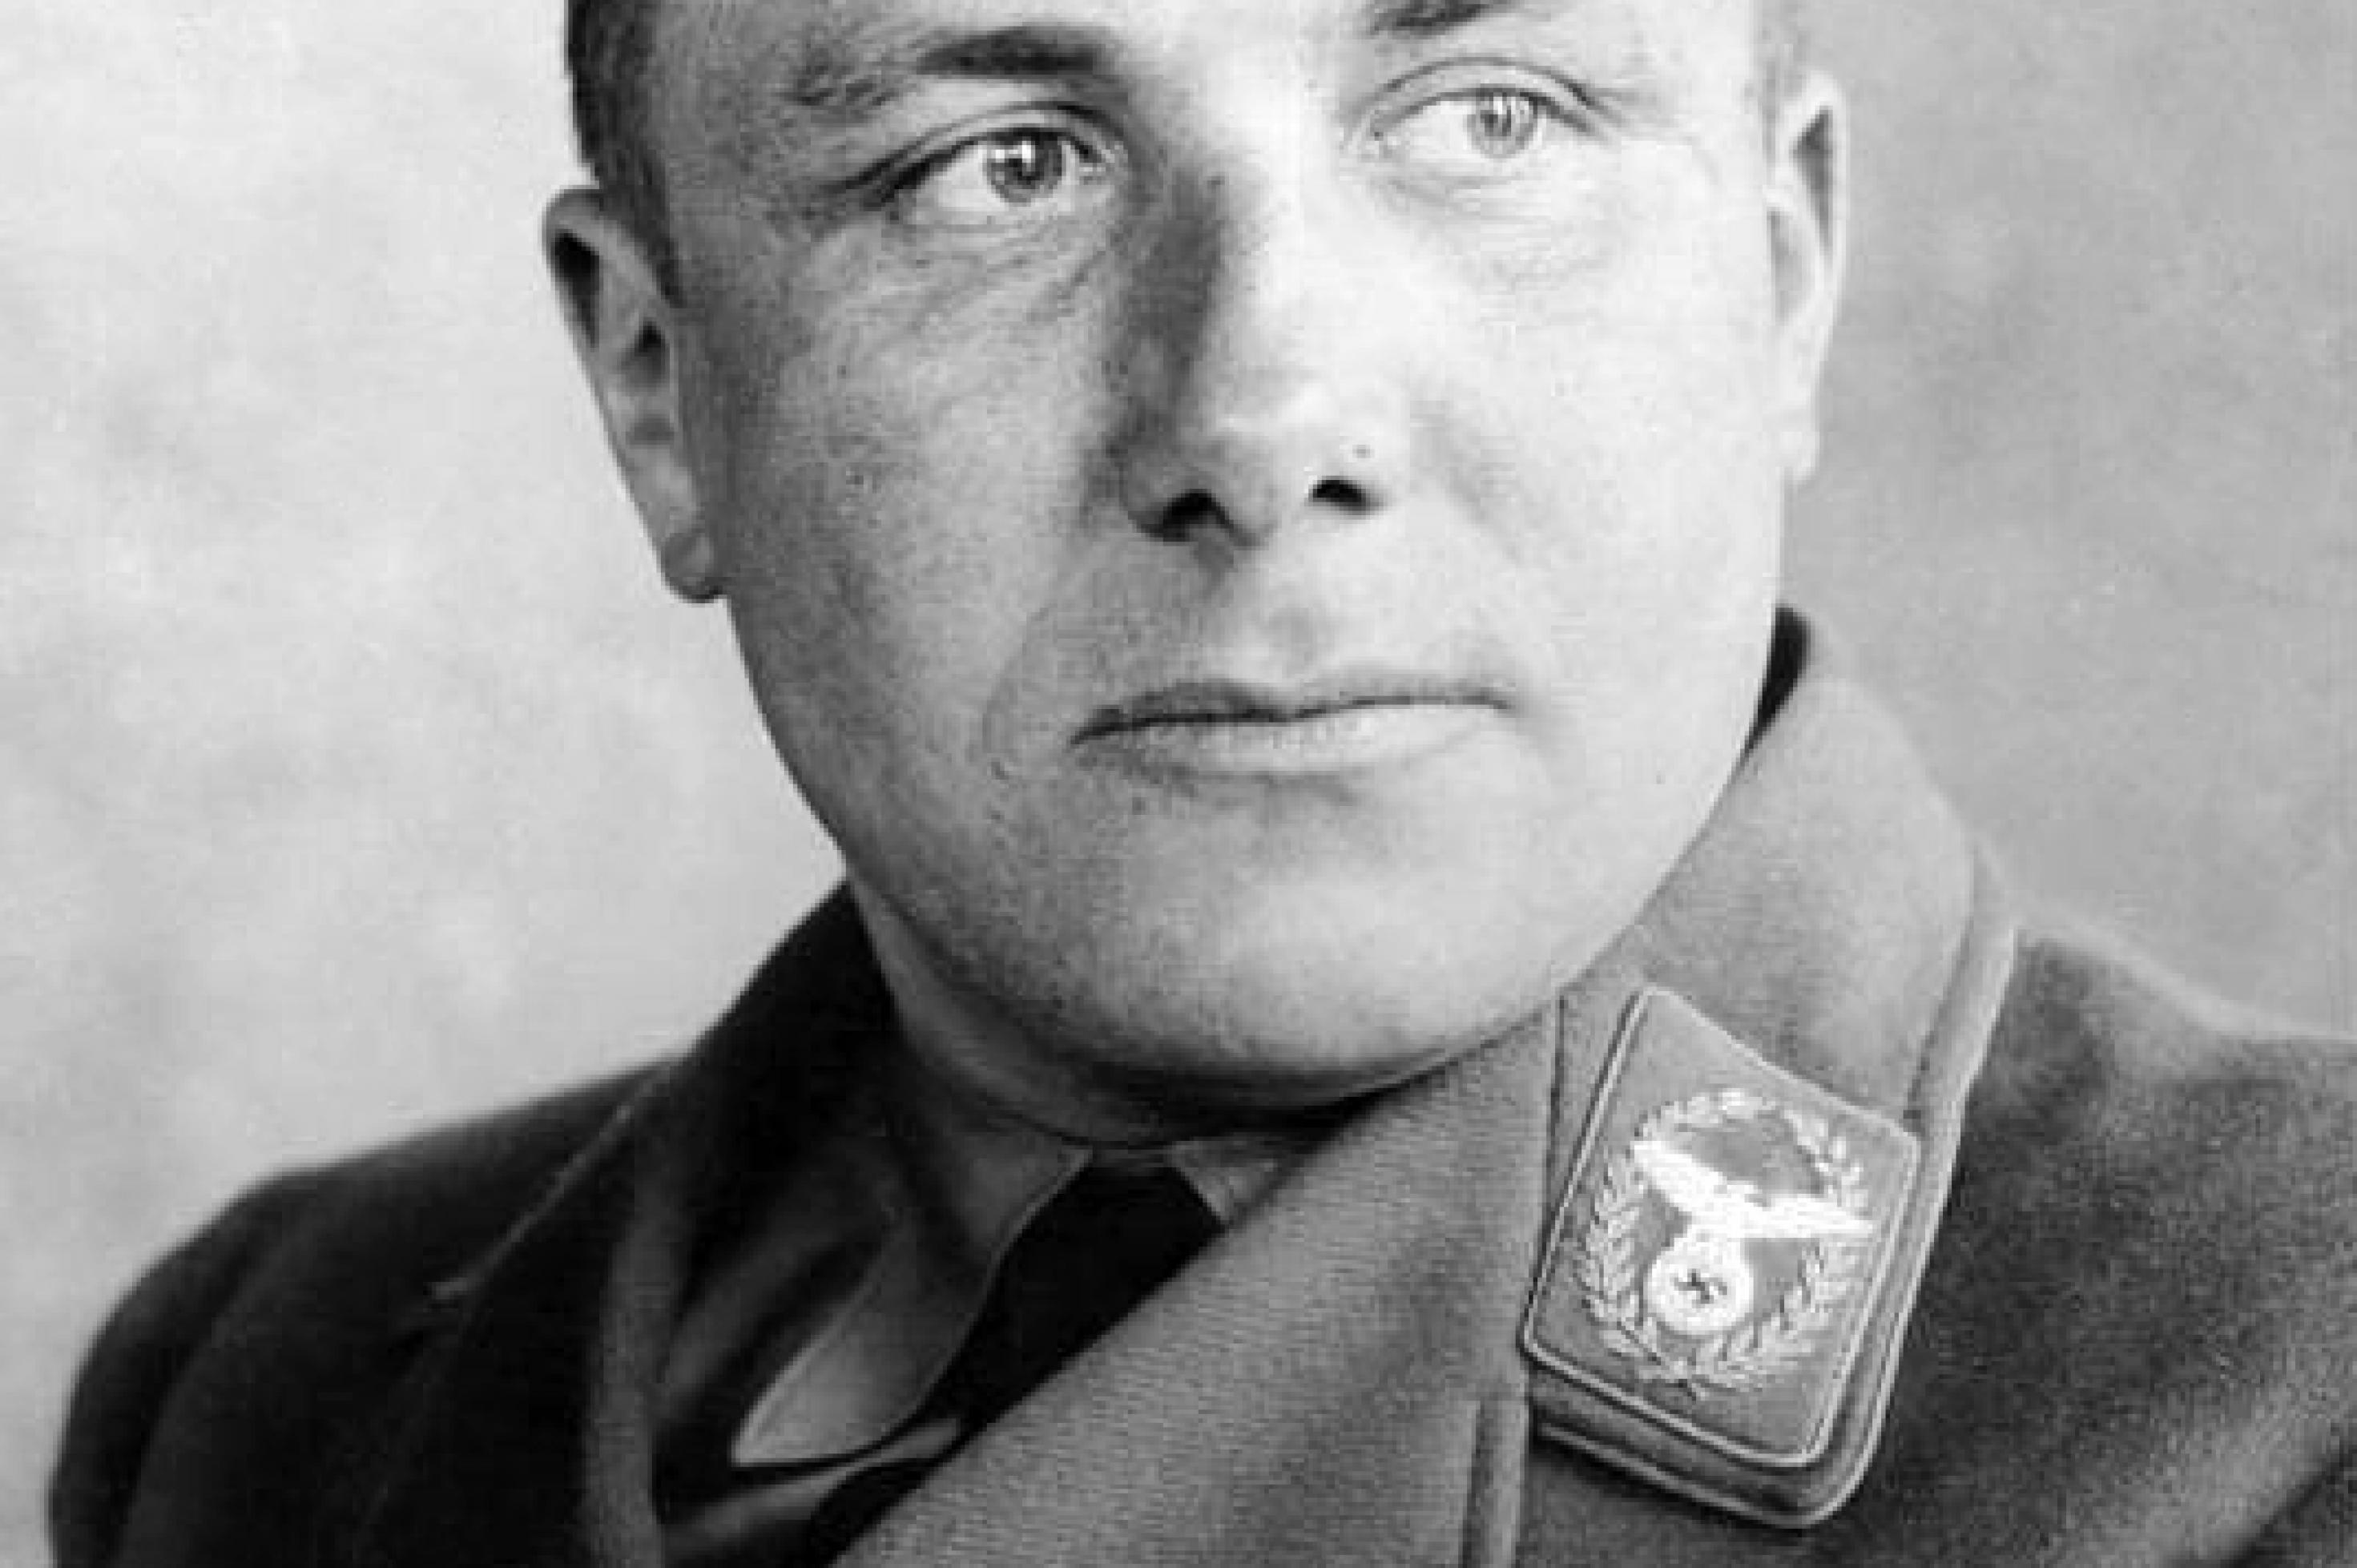 Das Schwarzweiß-Bild zeigt den Nationalsozialisten Martin Bormann im Porträt.